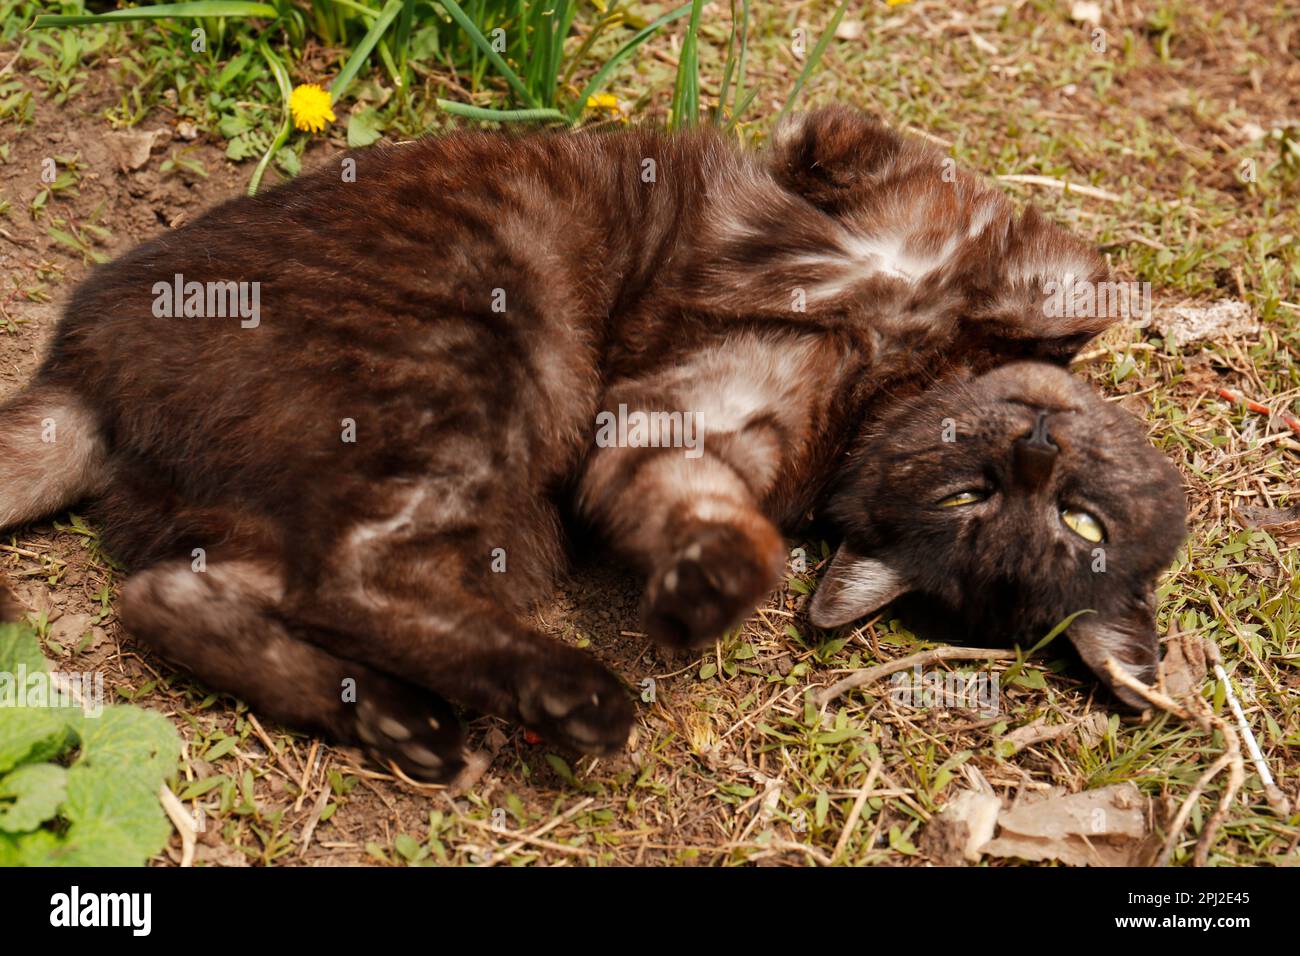 Adorabile gatto scuro che riposa su erba verde all'aperto Foto Stock